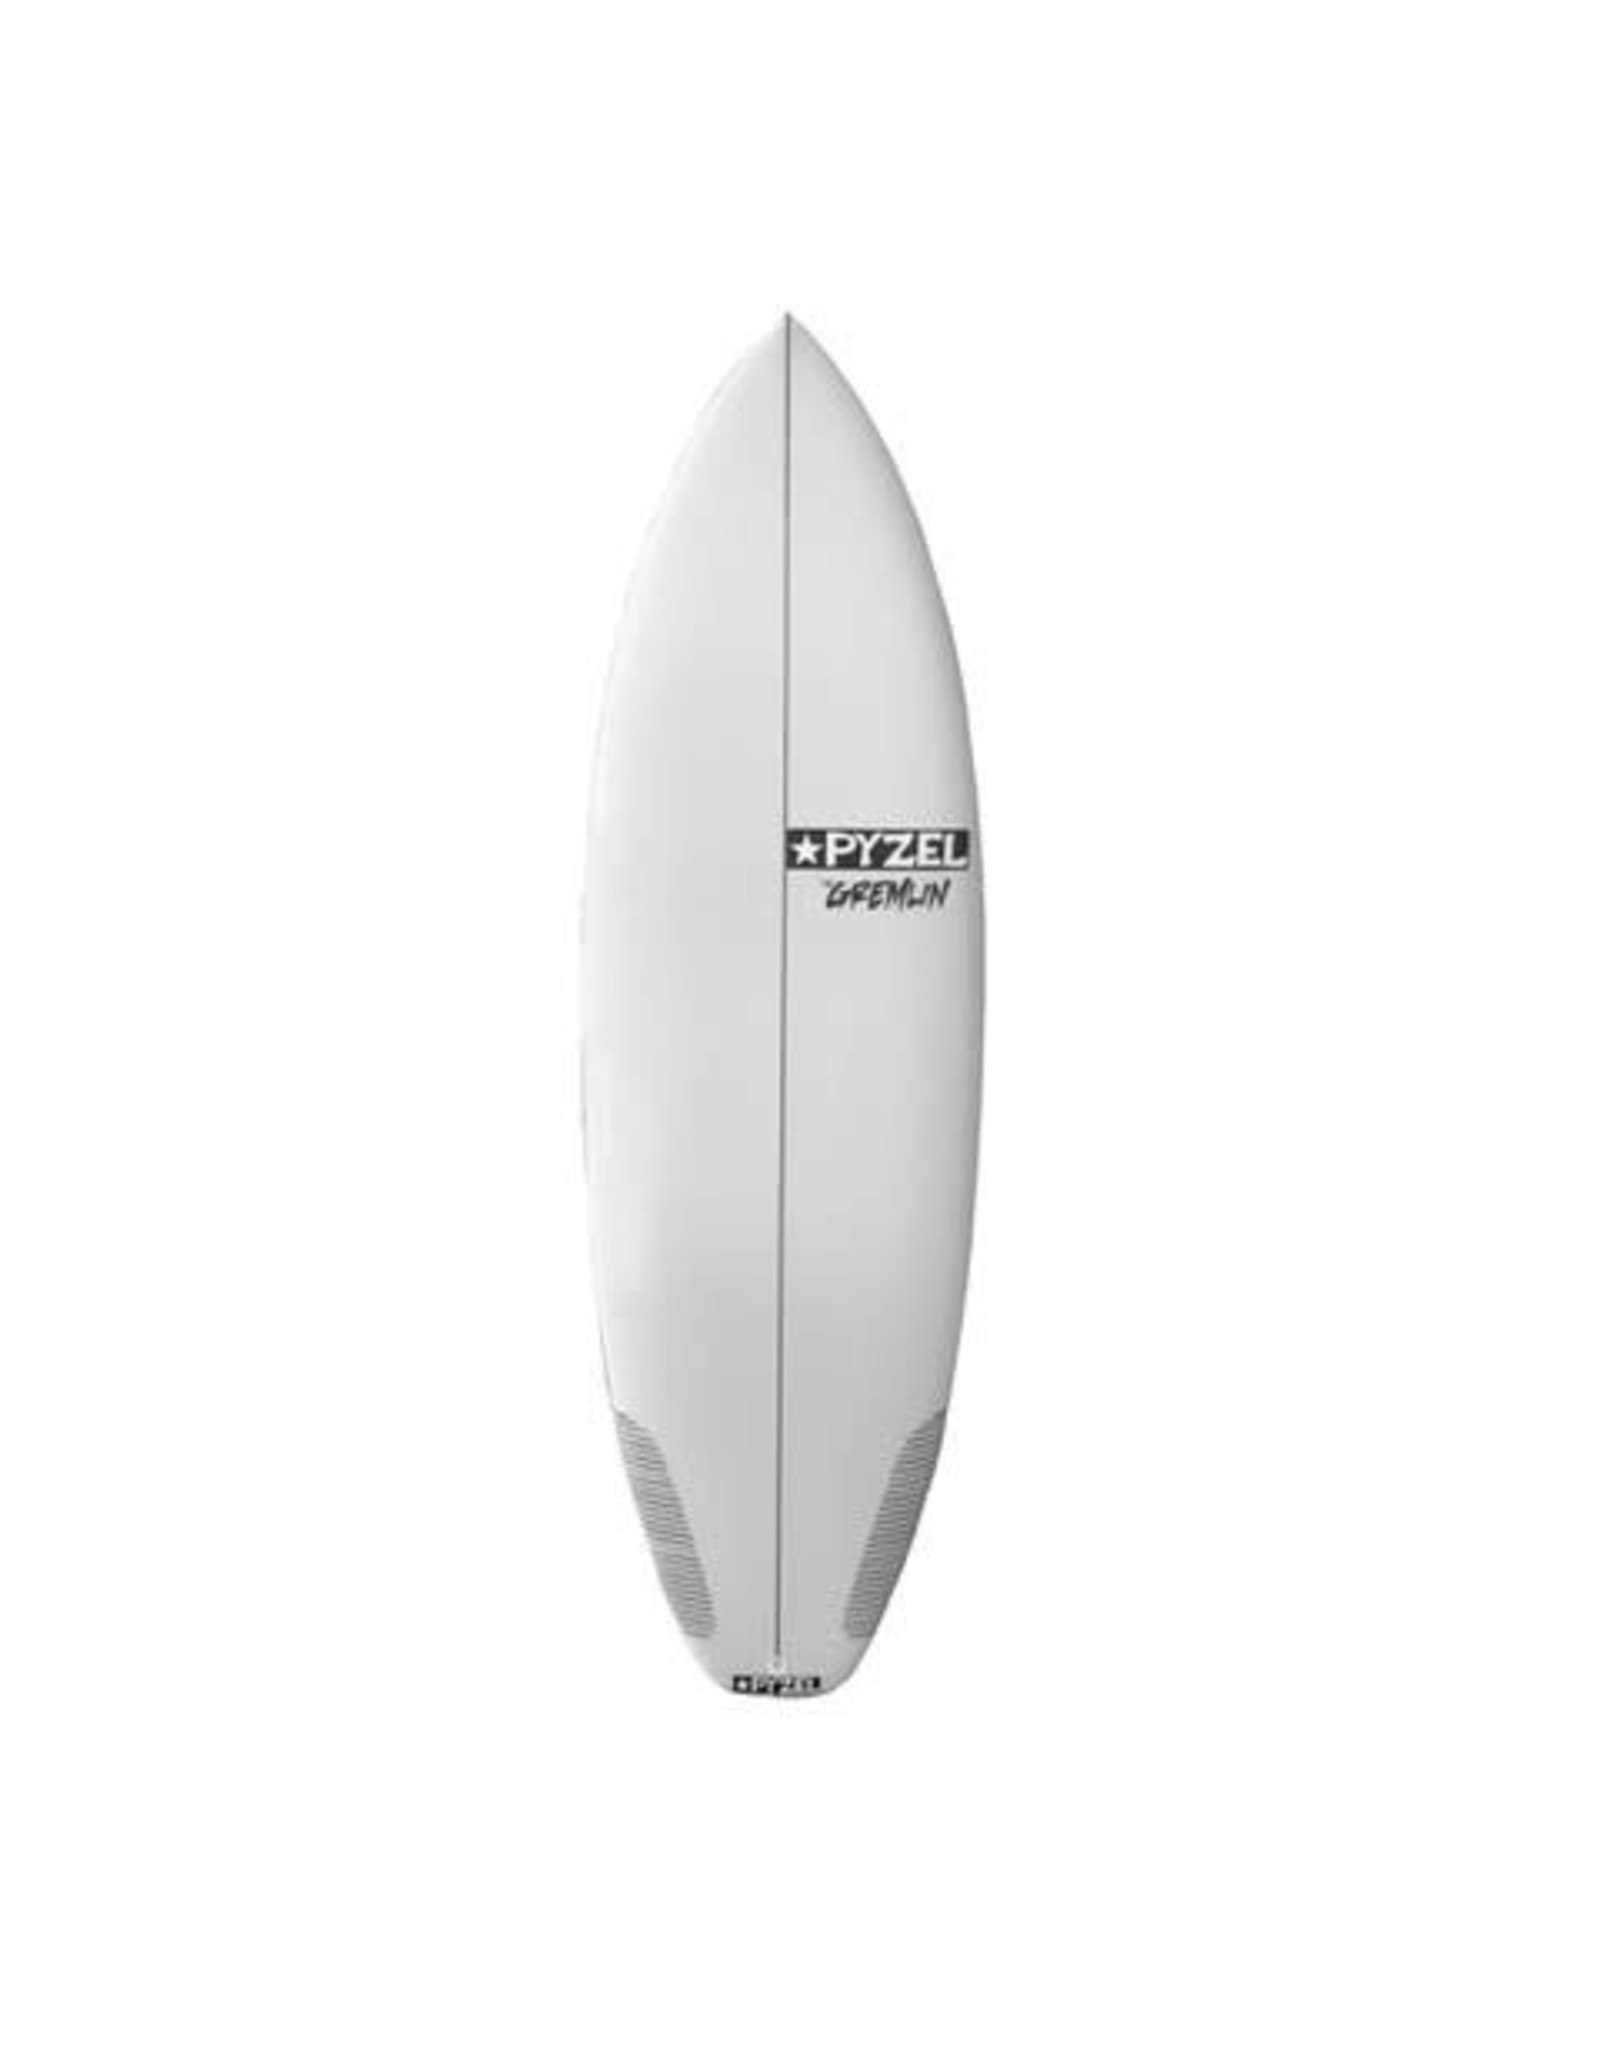 Pyzel Surfboards Pyzel 5'10" Gremlin